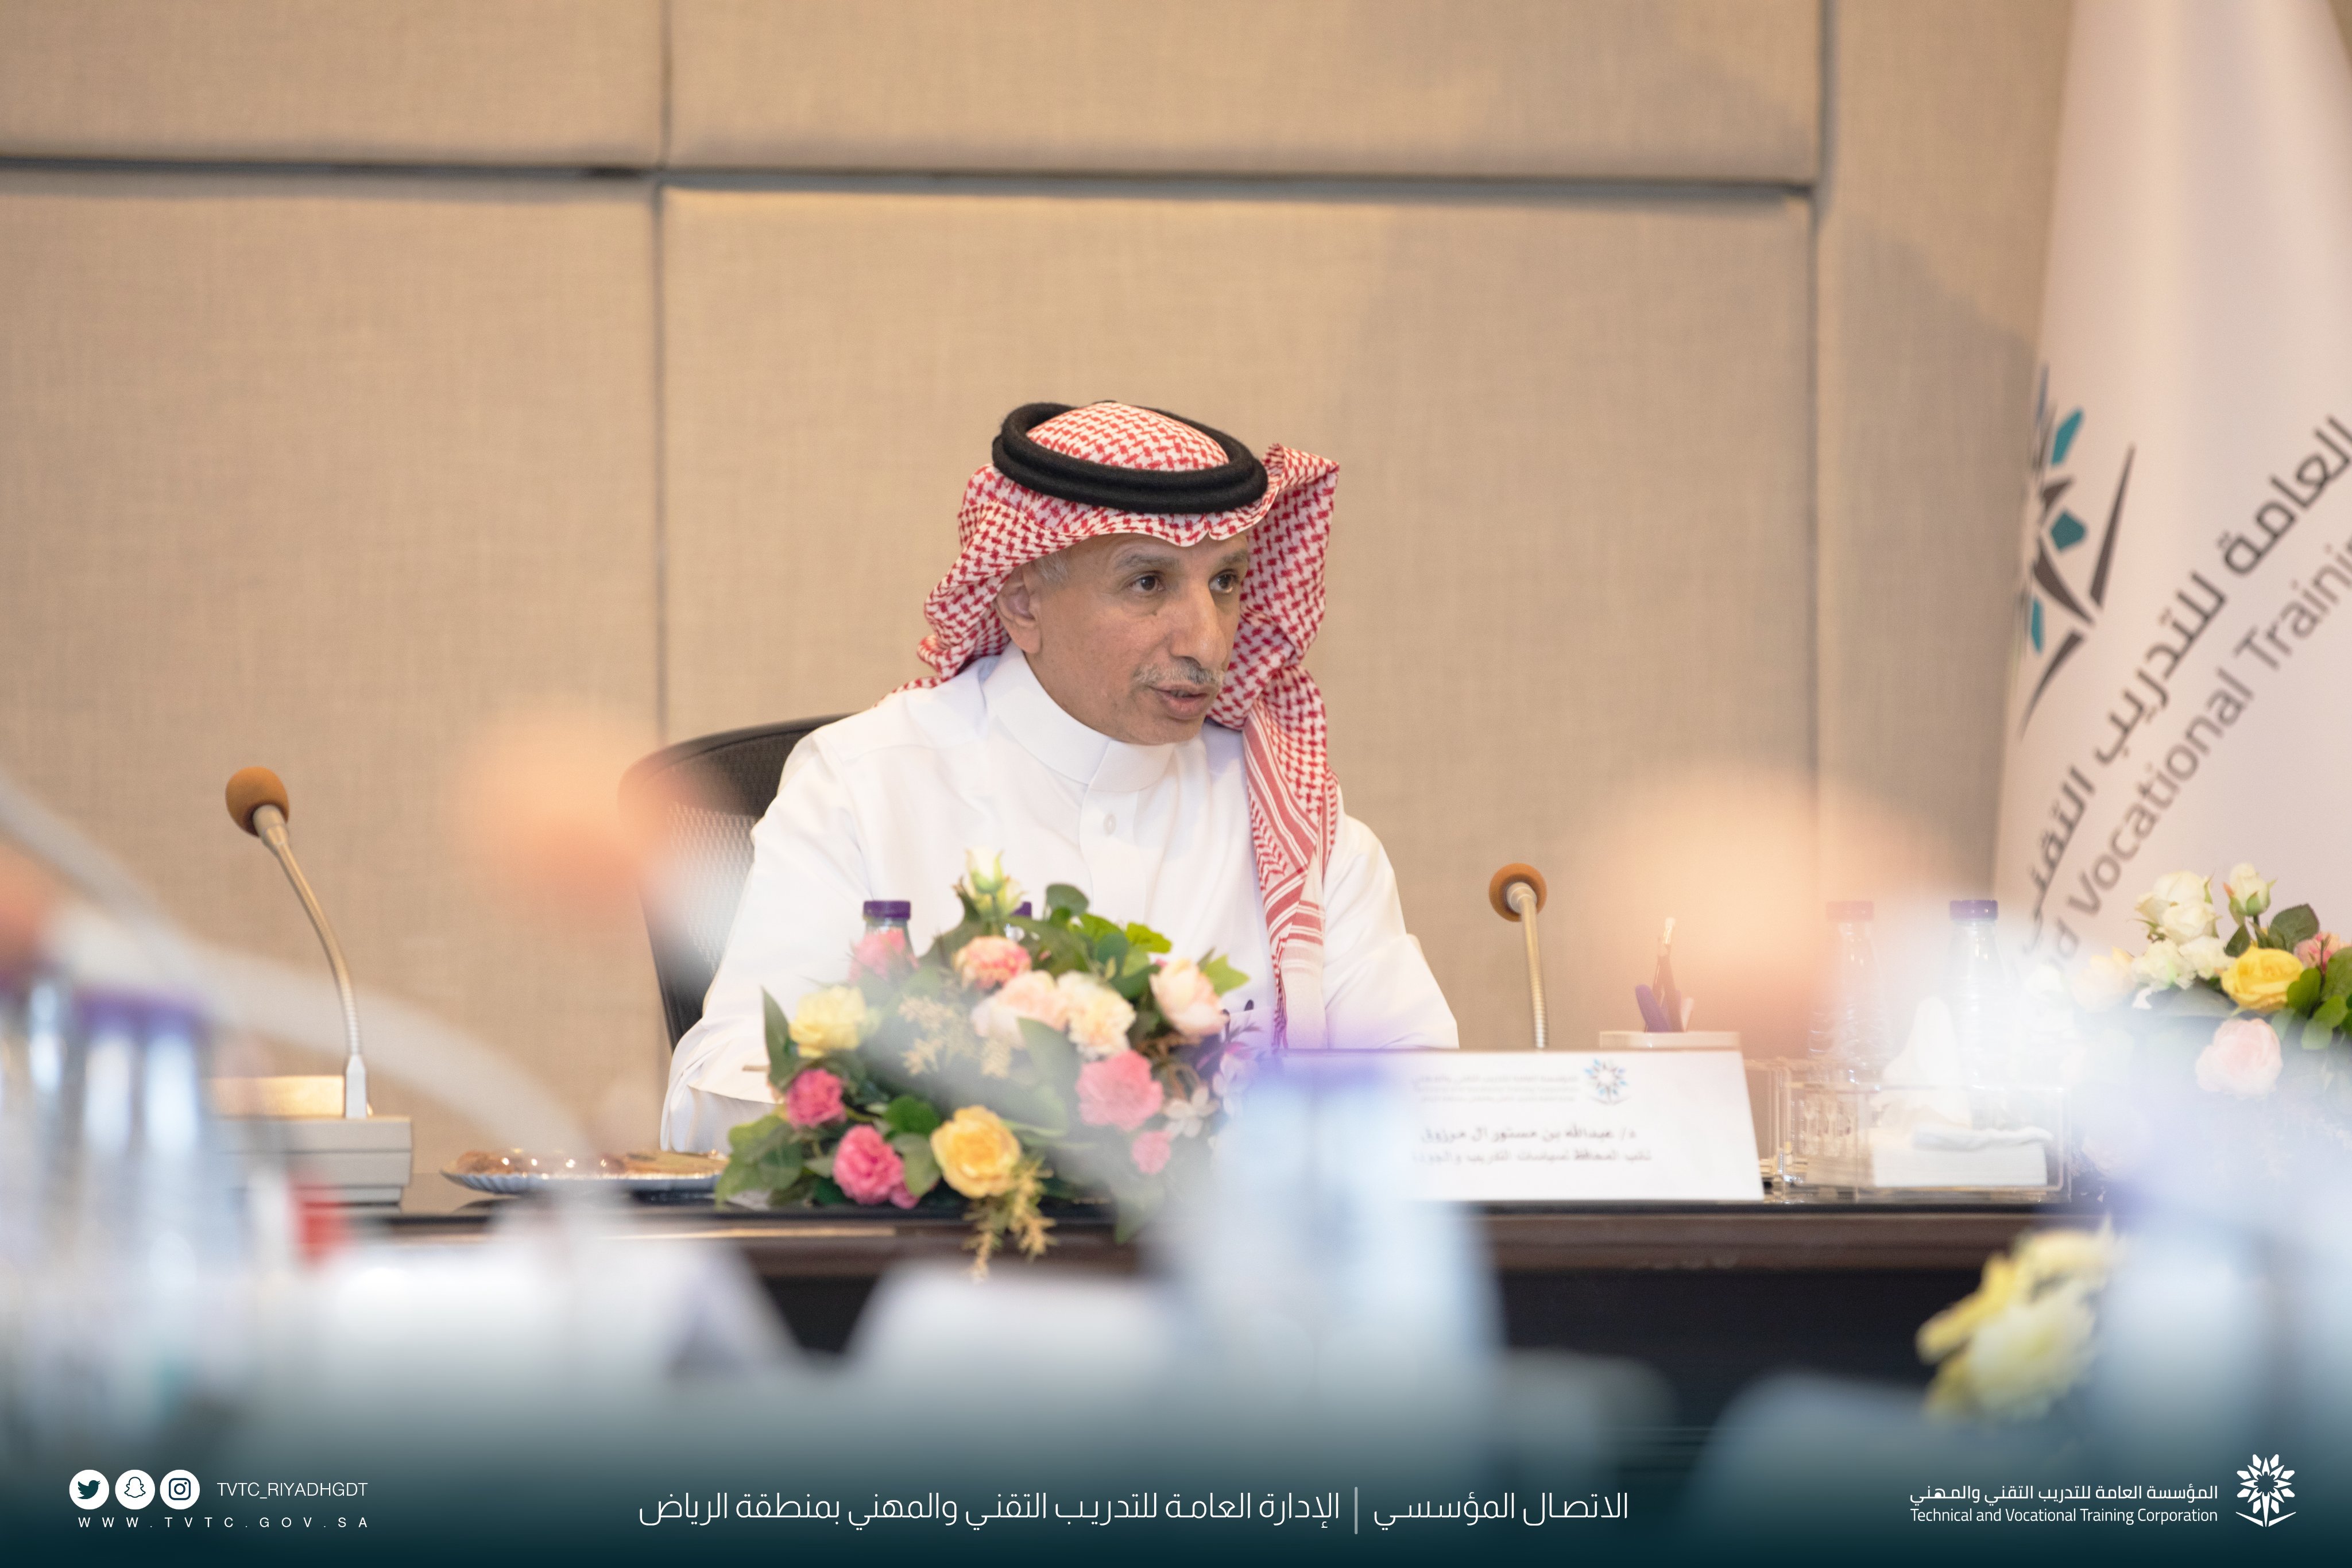 نائب المحافظ لسياسات التدريب والجودة يزورُ الإدارة العامة للتدريب التقني بمنطقة الرياض